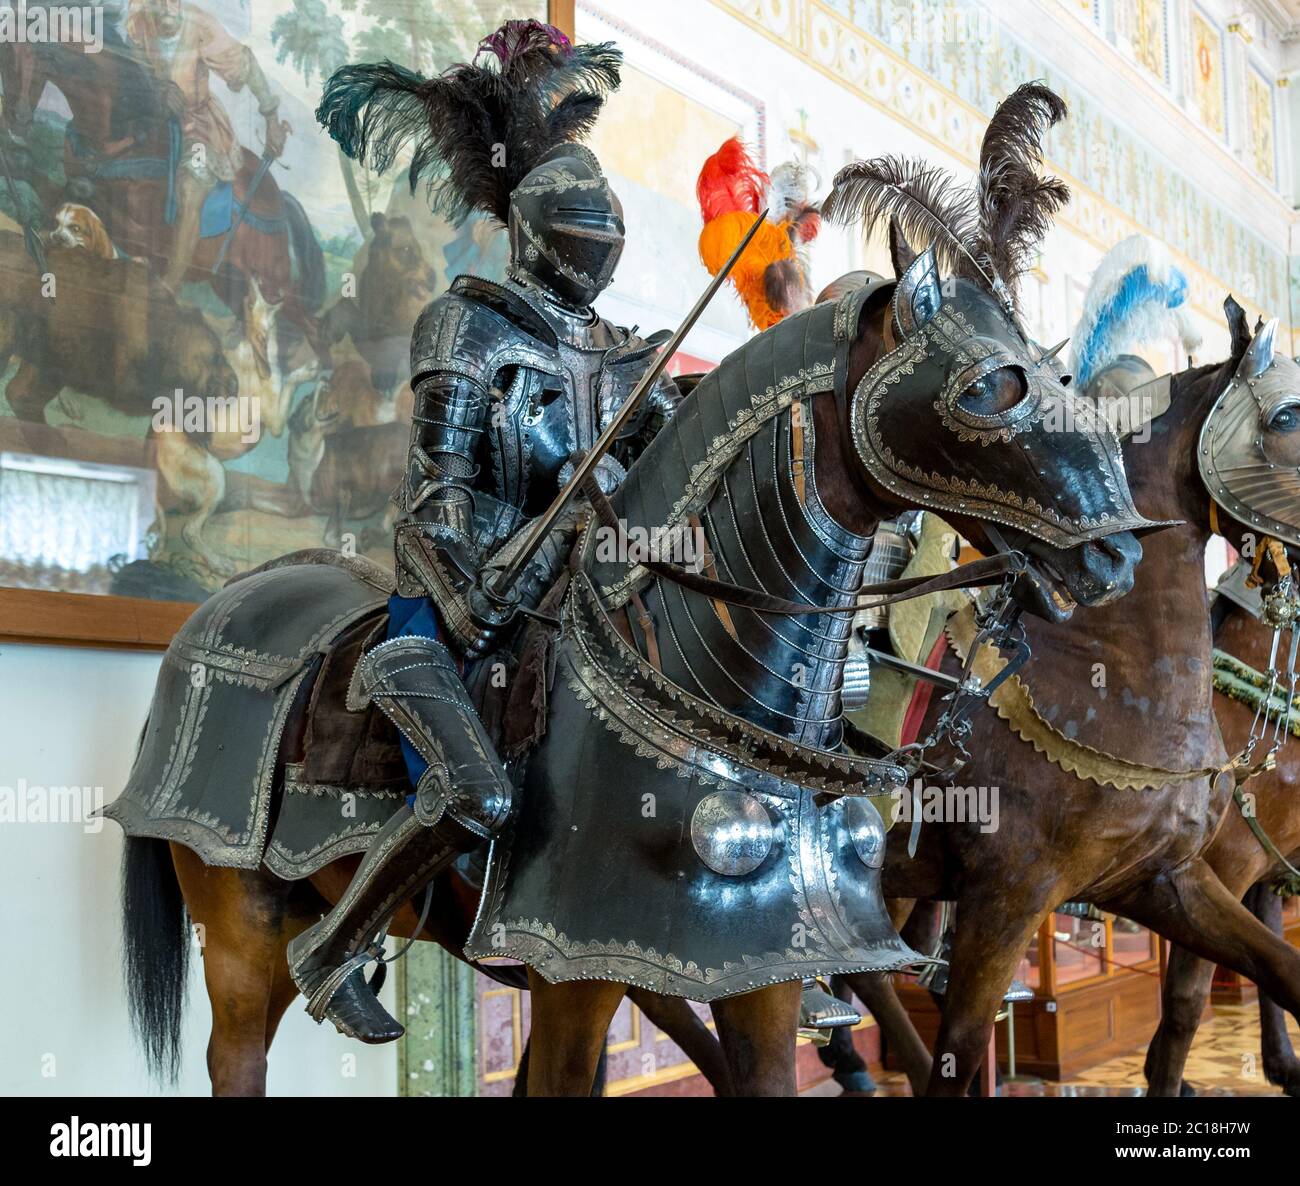 Mittelalterliche Ritter in Rüstung auf einem Pferd Stockfoto